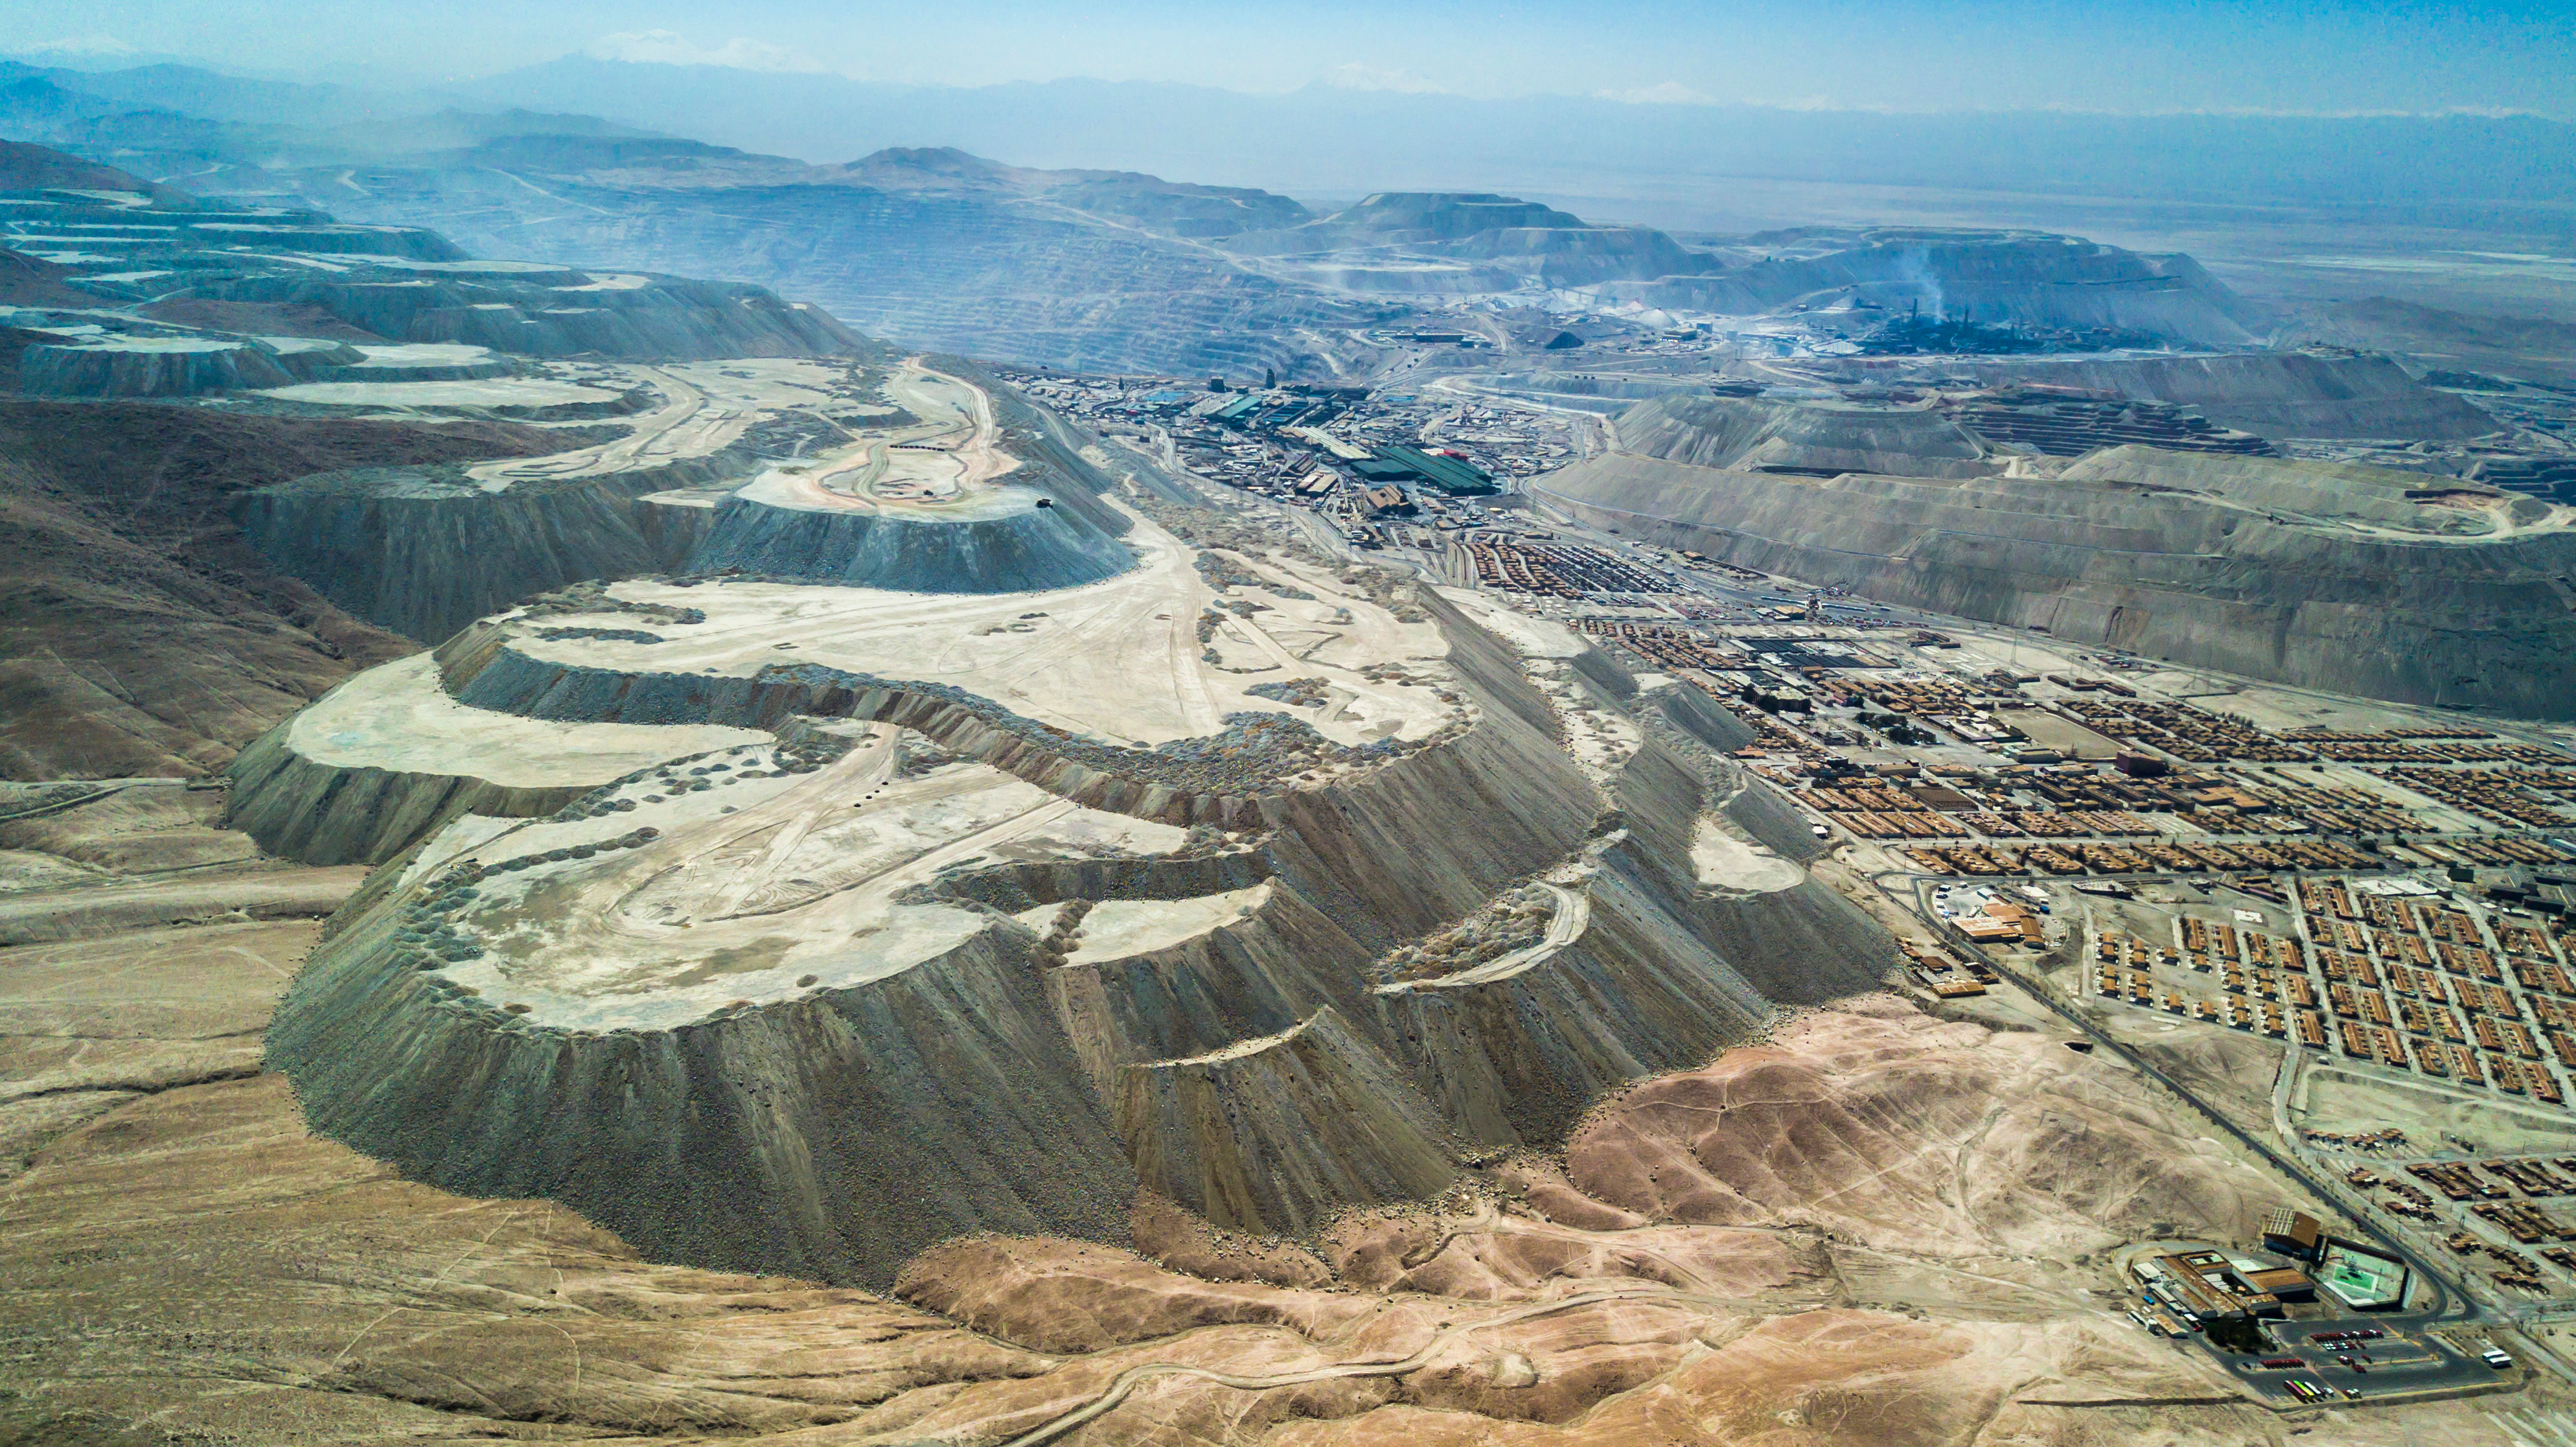 세계 최대 규모의 노천 구리 광산인 칠레 추키카마타 전경. 구리 1t을 생산하는 데 13만ℓ의 물을 소비하는 이 광산에서 매년 65만t의 구리가 채굴된다.  인플루엔셜 제공